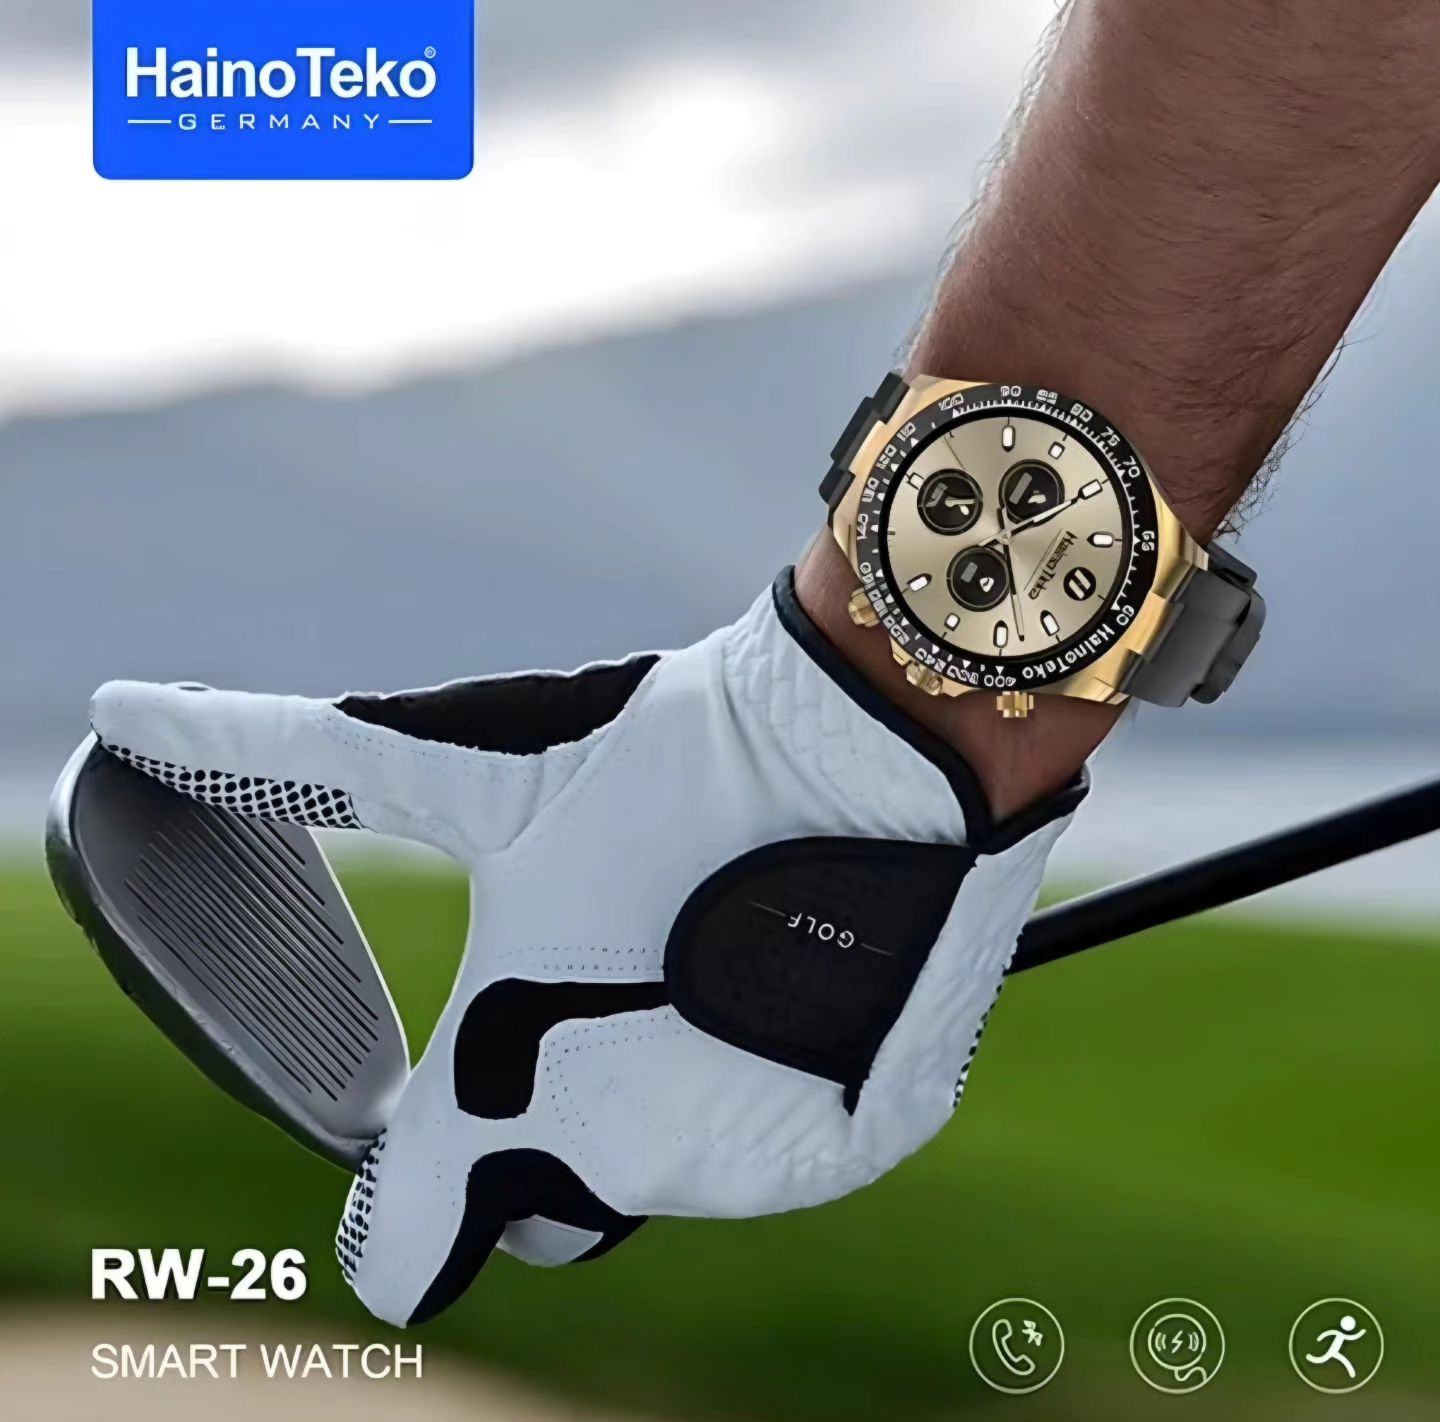 HainoTeko Germany RW-26 (1 Year Warranty)